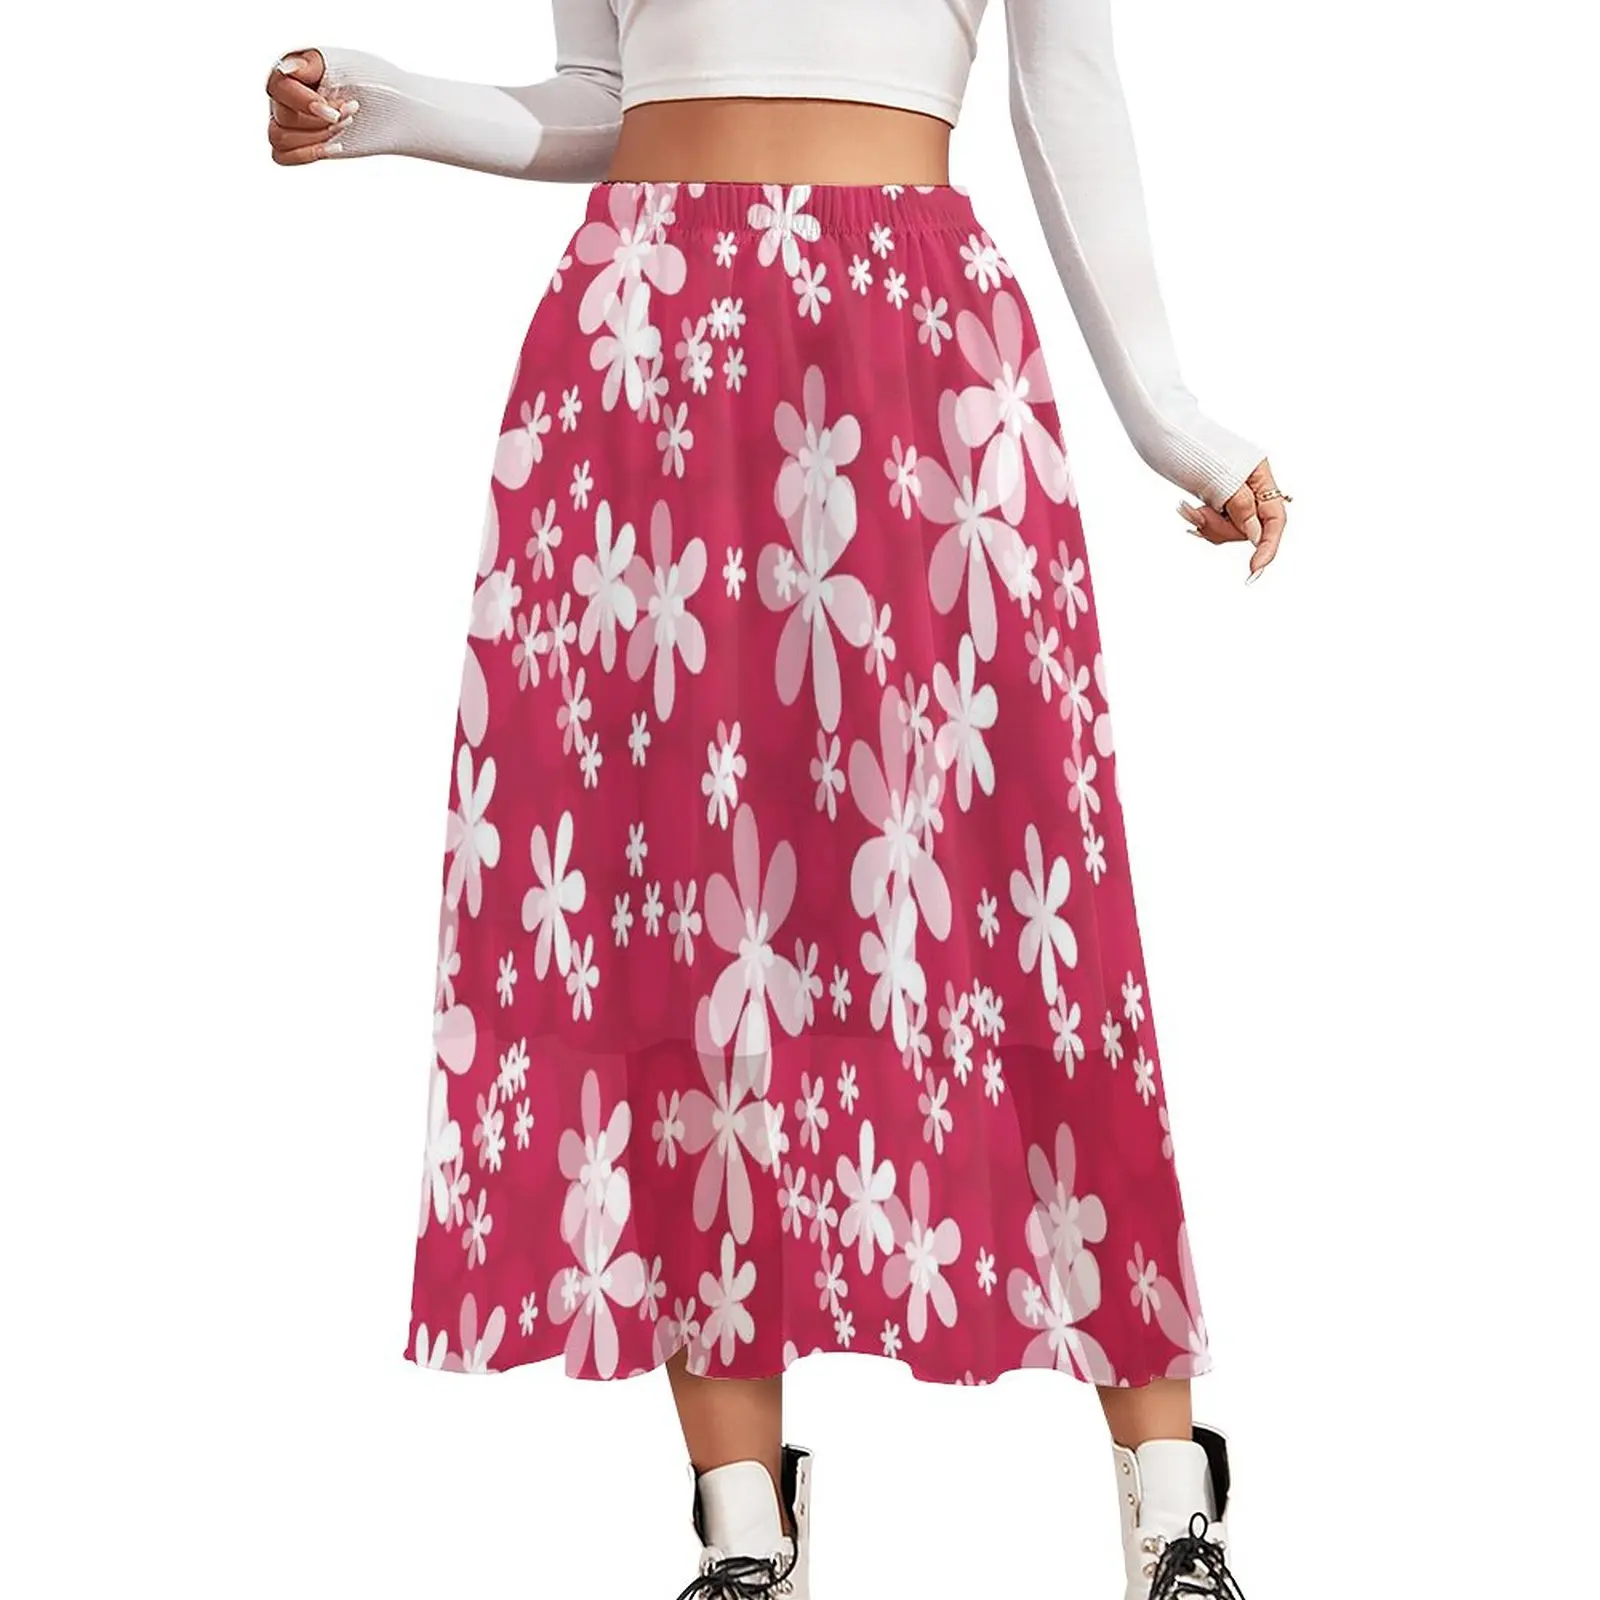 

Белая шифоновая юбка с маргаритками, винтажные длинные юбки с цветочным принтом в уличном стиле, женская элегантная юбка-трапеция, дизайнерская одежда, идея для подарка